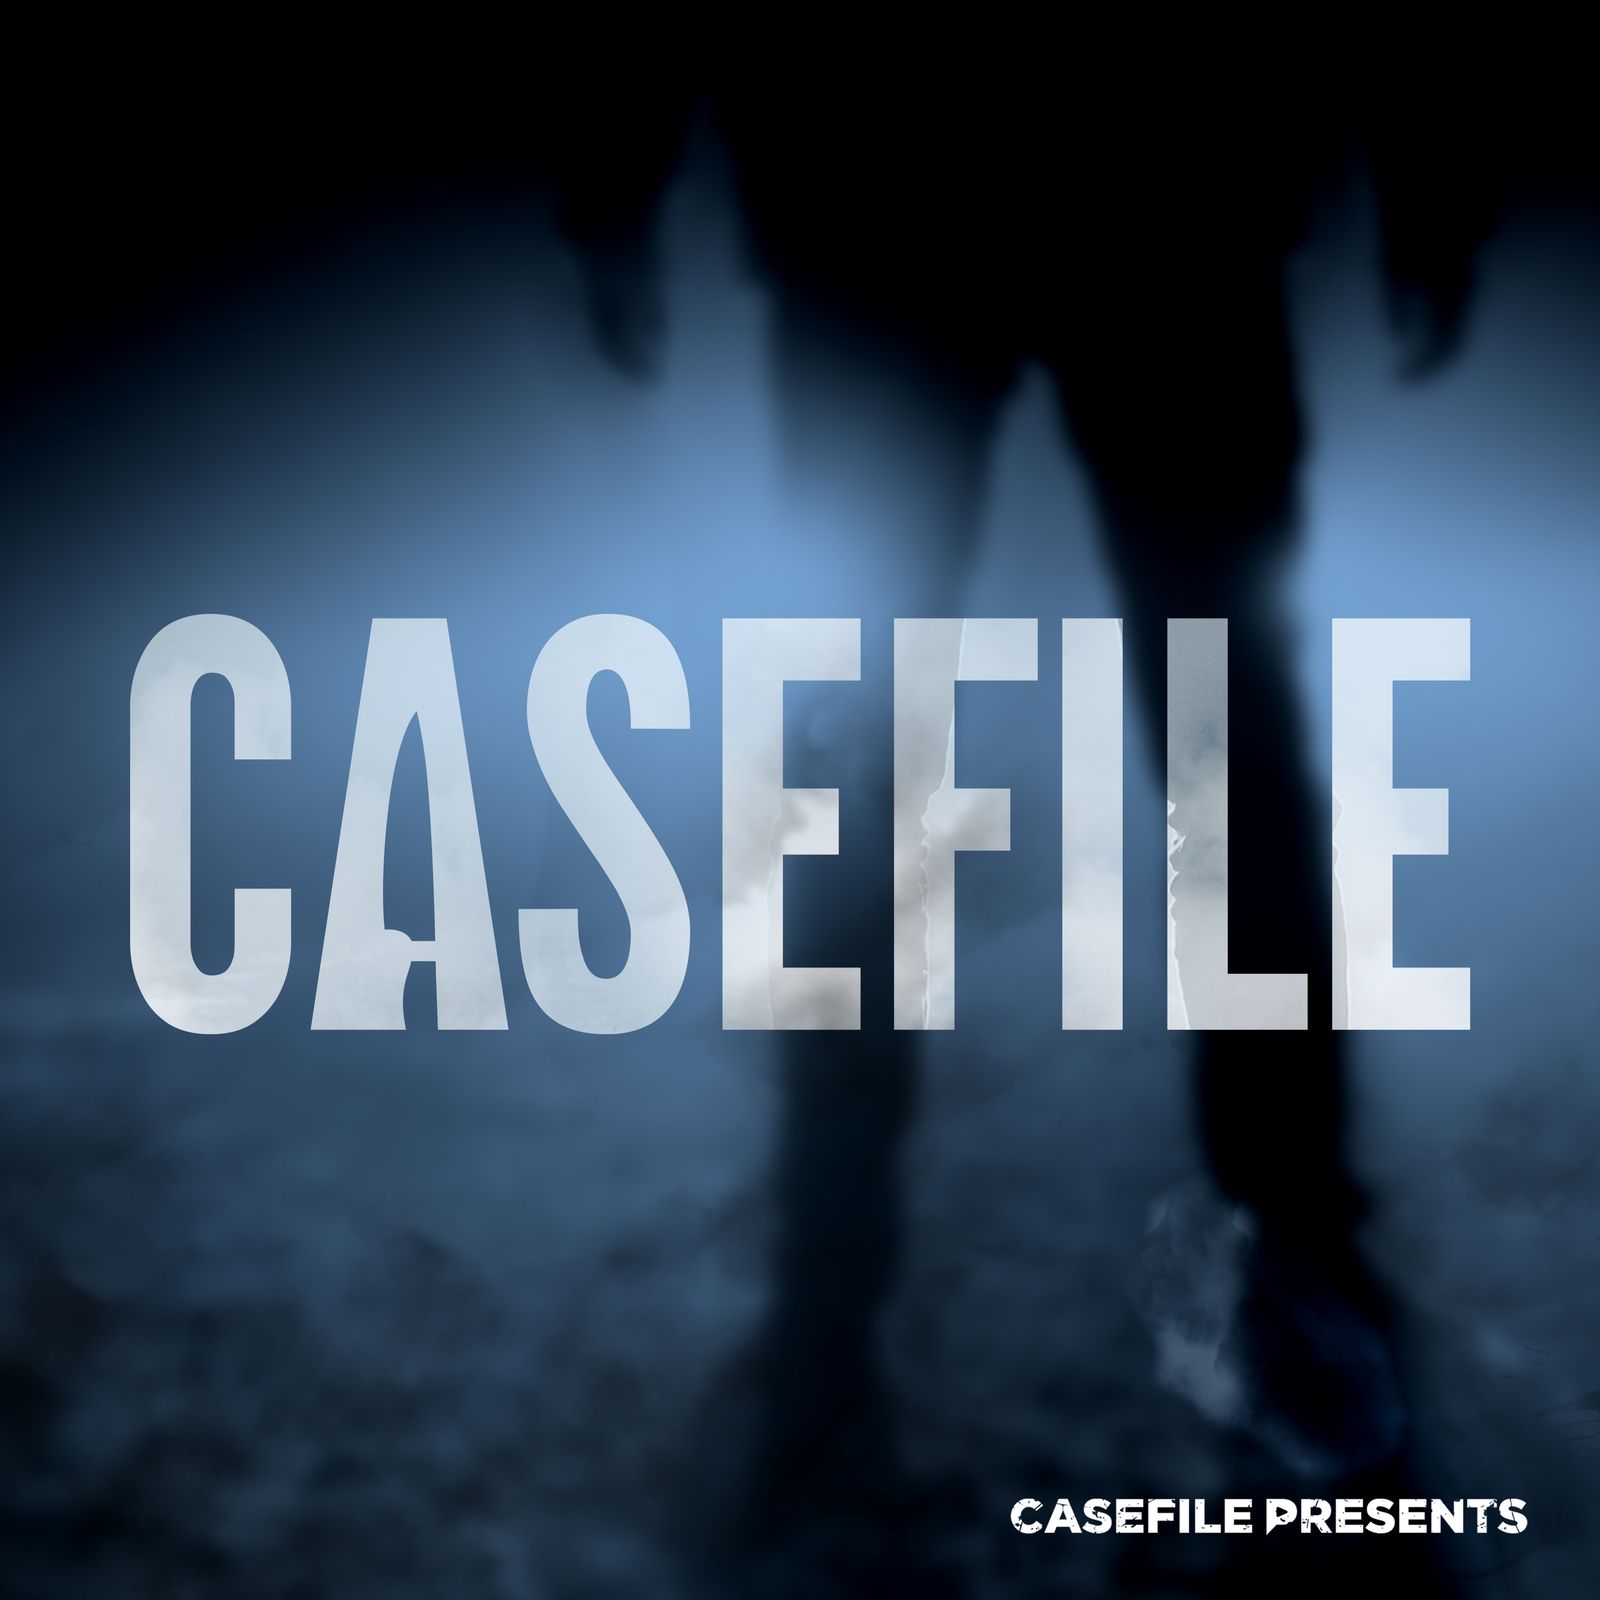 Casefile True Crime by Casefile Presents